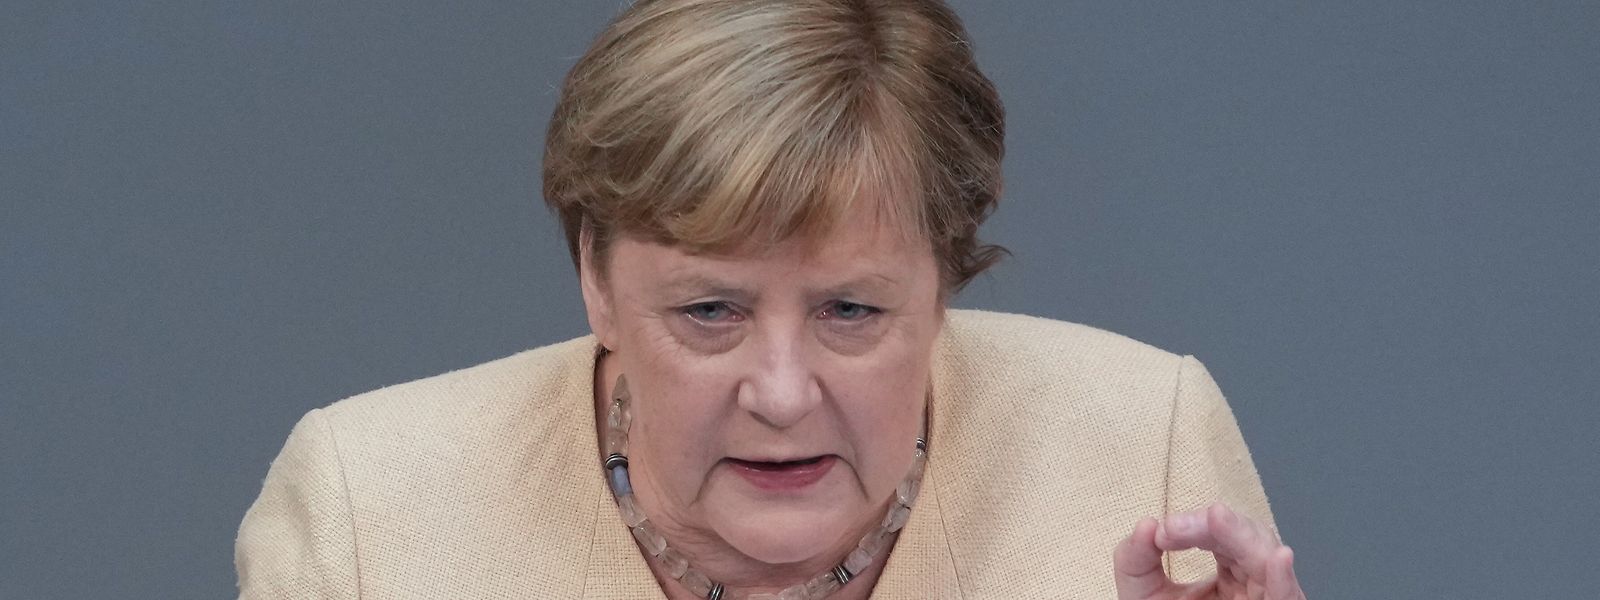 Bundeskanzlerin Angela Merkel (CDU) macht bei ihrer wohl letzten Bundestagsrede Wahlkampf für ihre Partei.